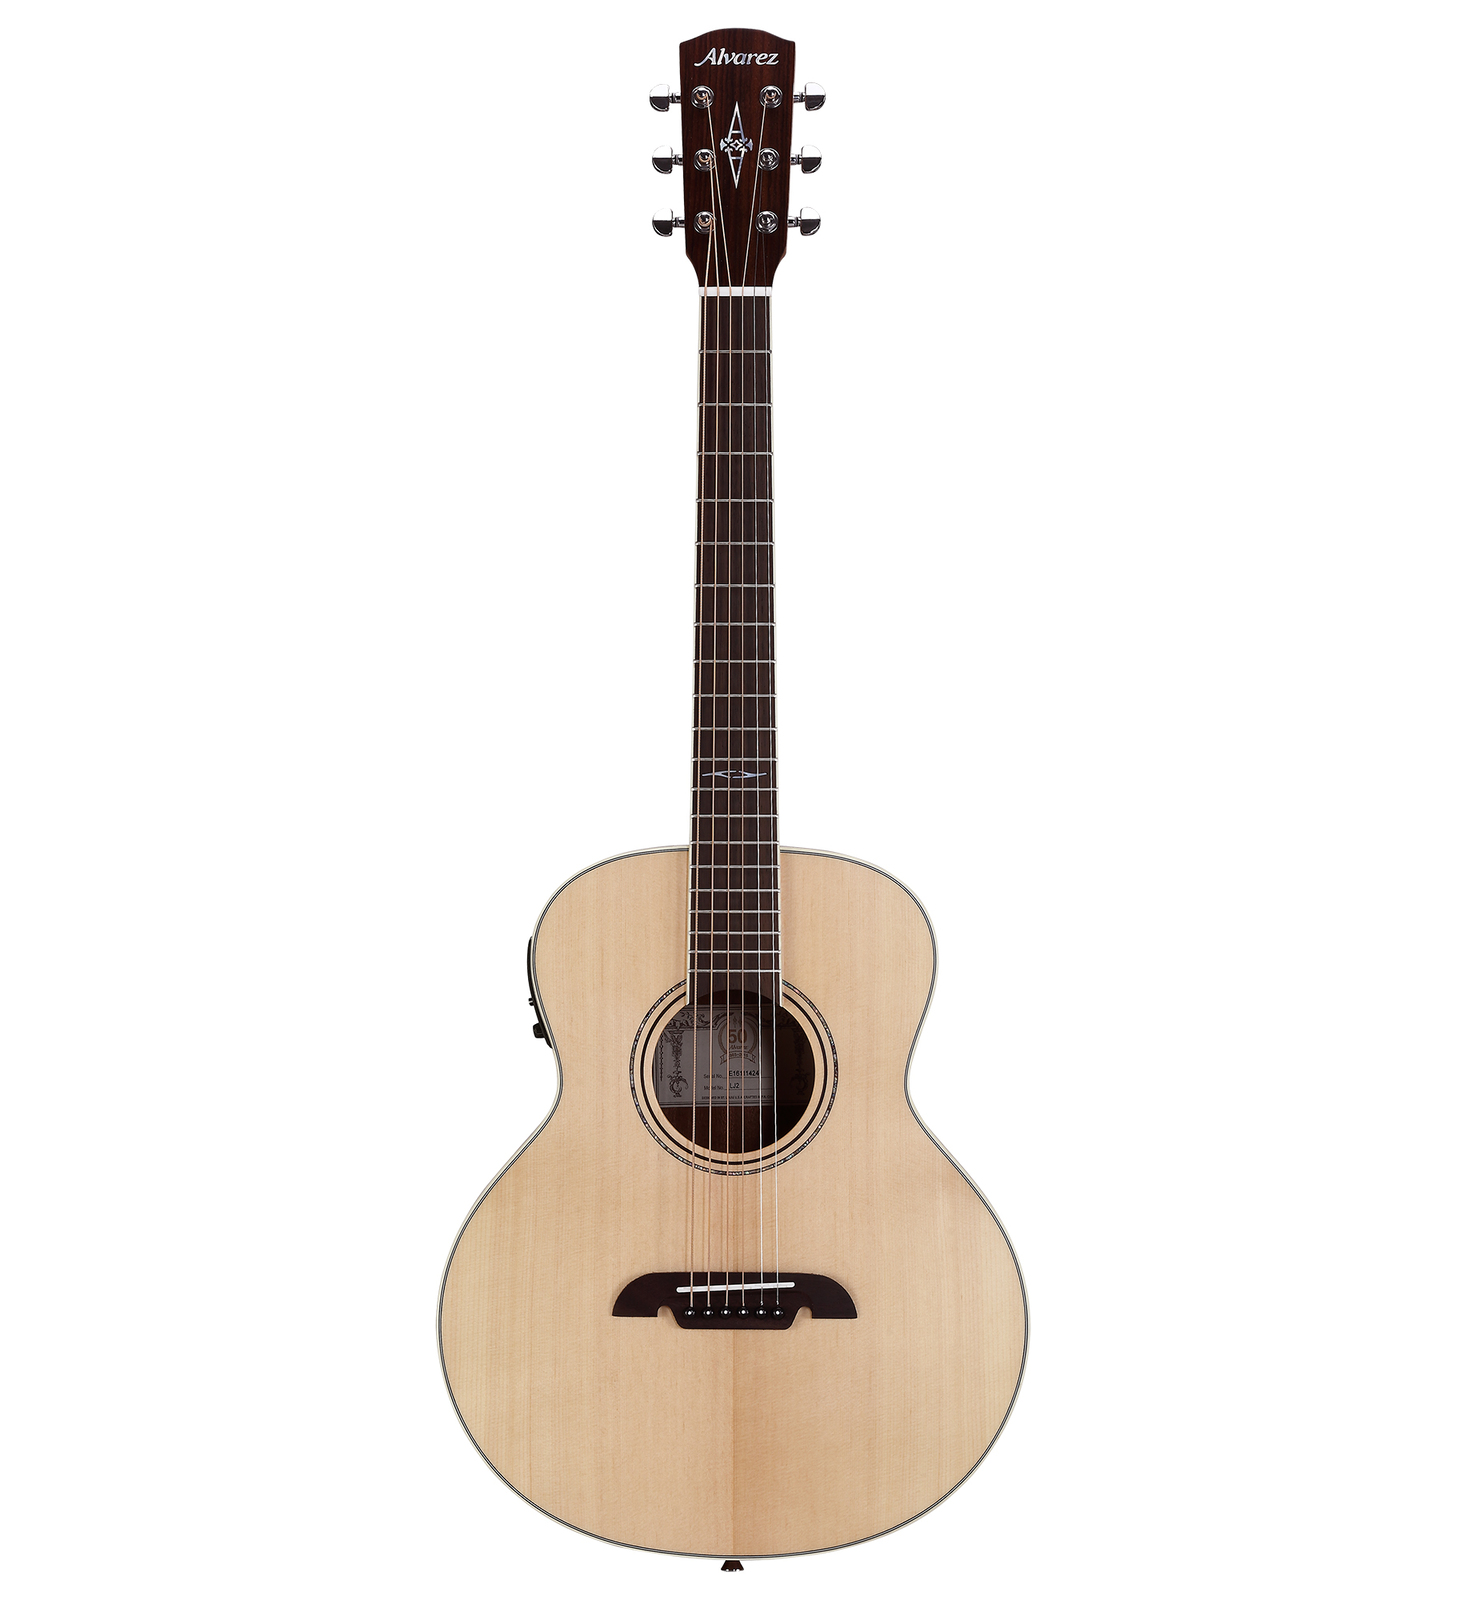 Alvarez LJ2E Little Jumbo Acoustic Guitar with Pick Up